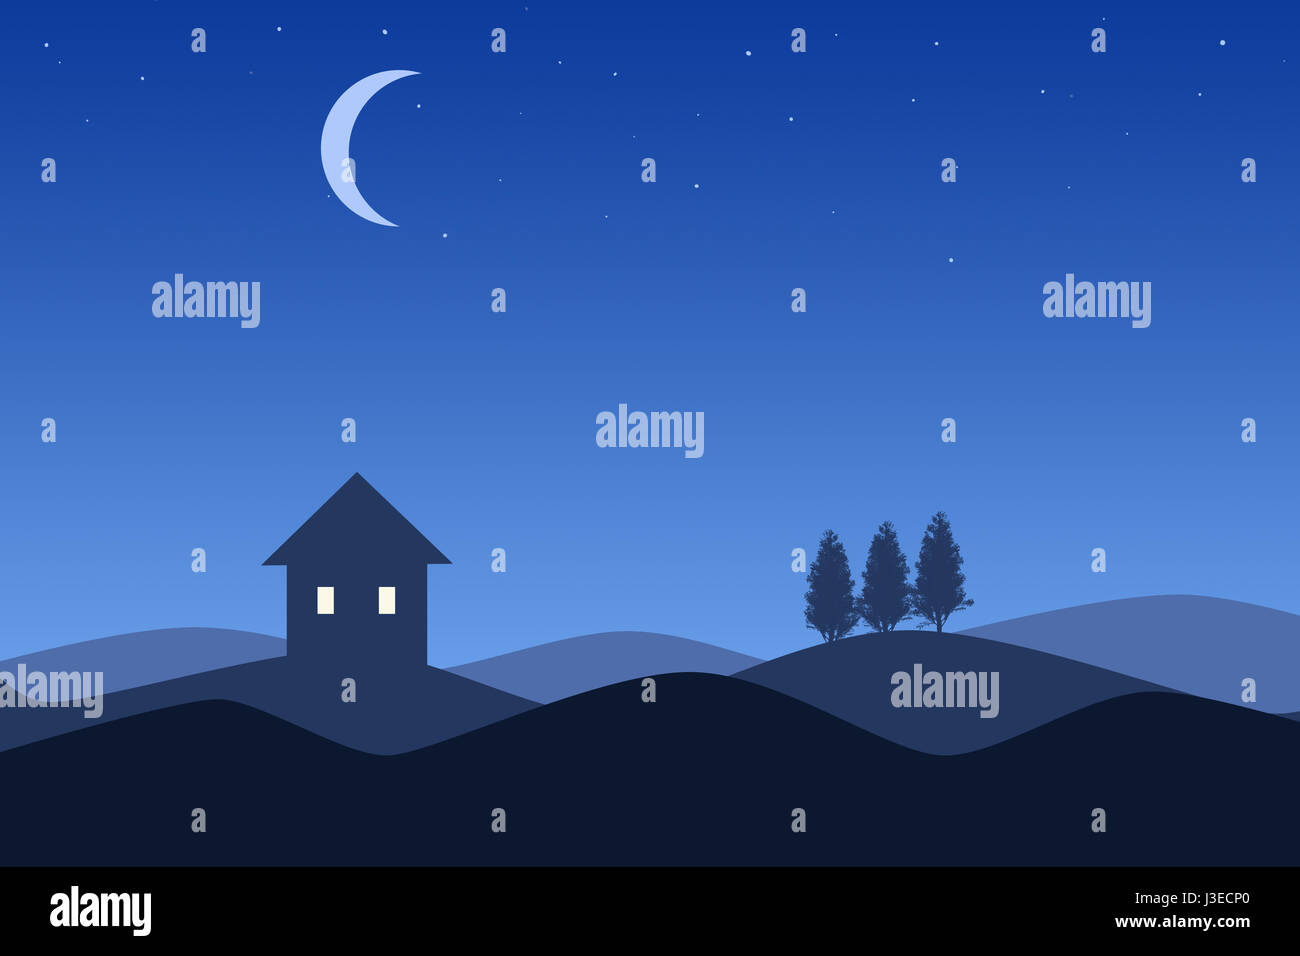 Imagen del cómic de tres casas de silueta en la noche bajo un degradado azul cielo y luna. Foto de stock